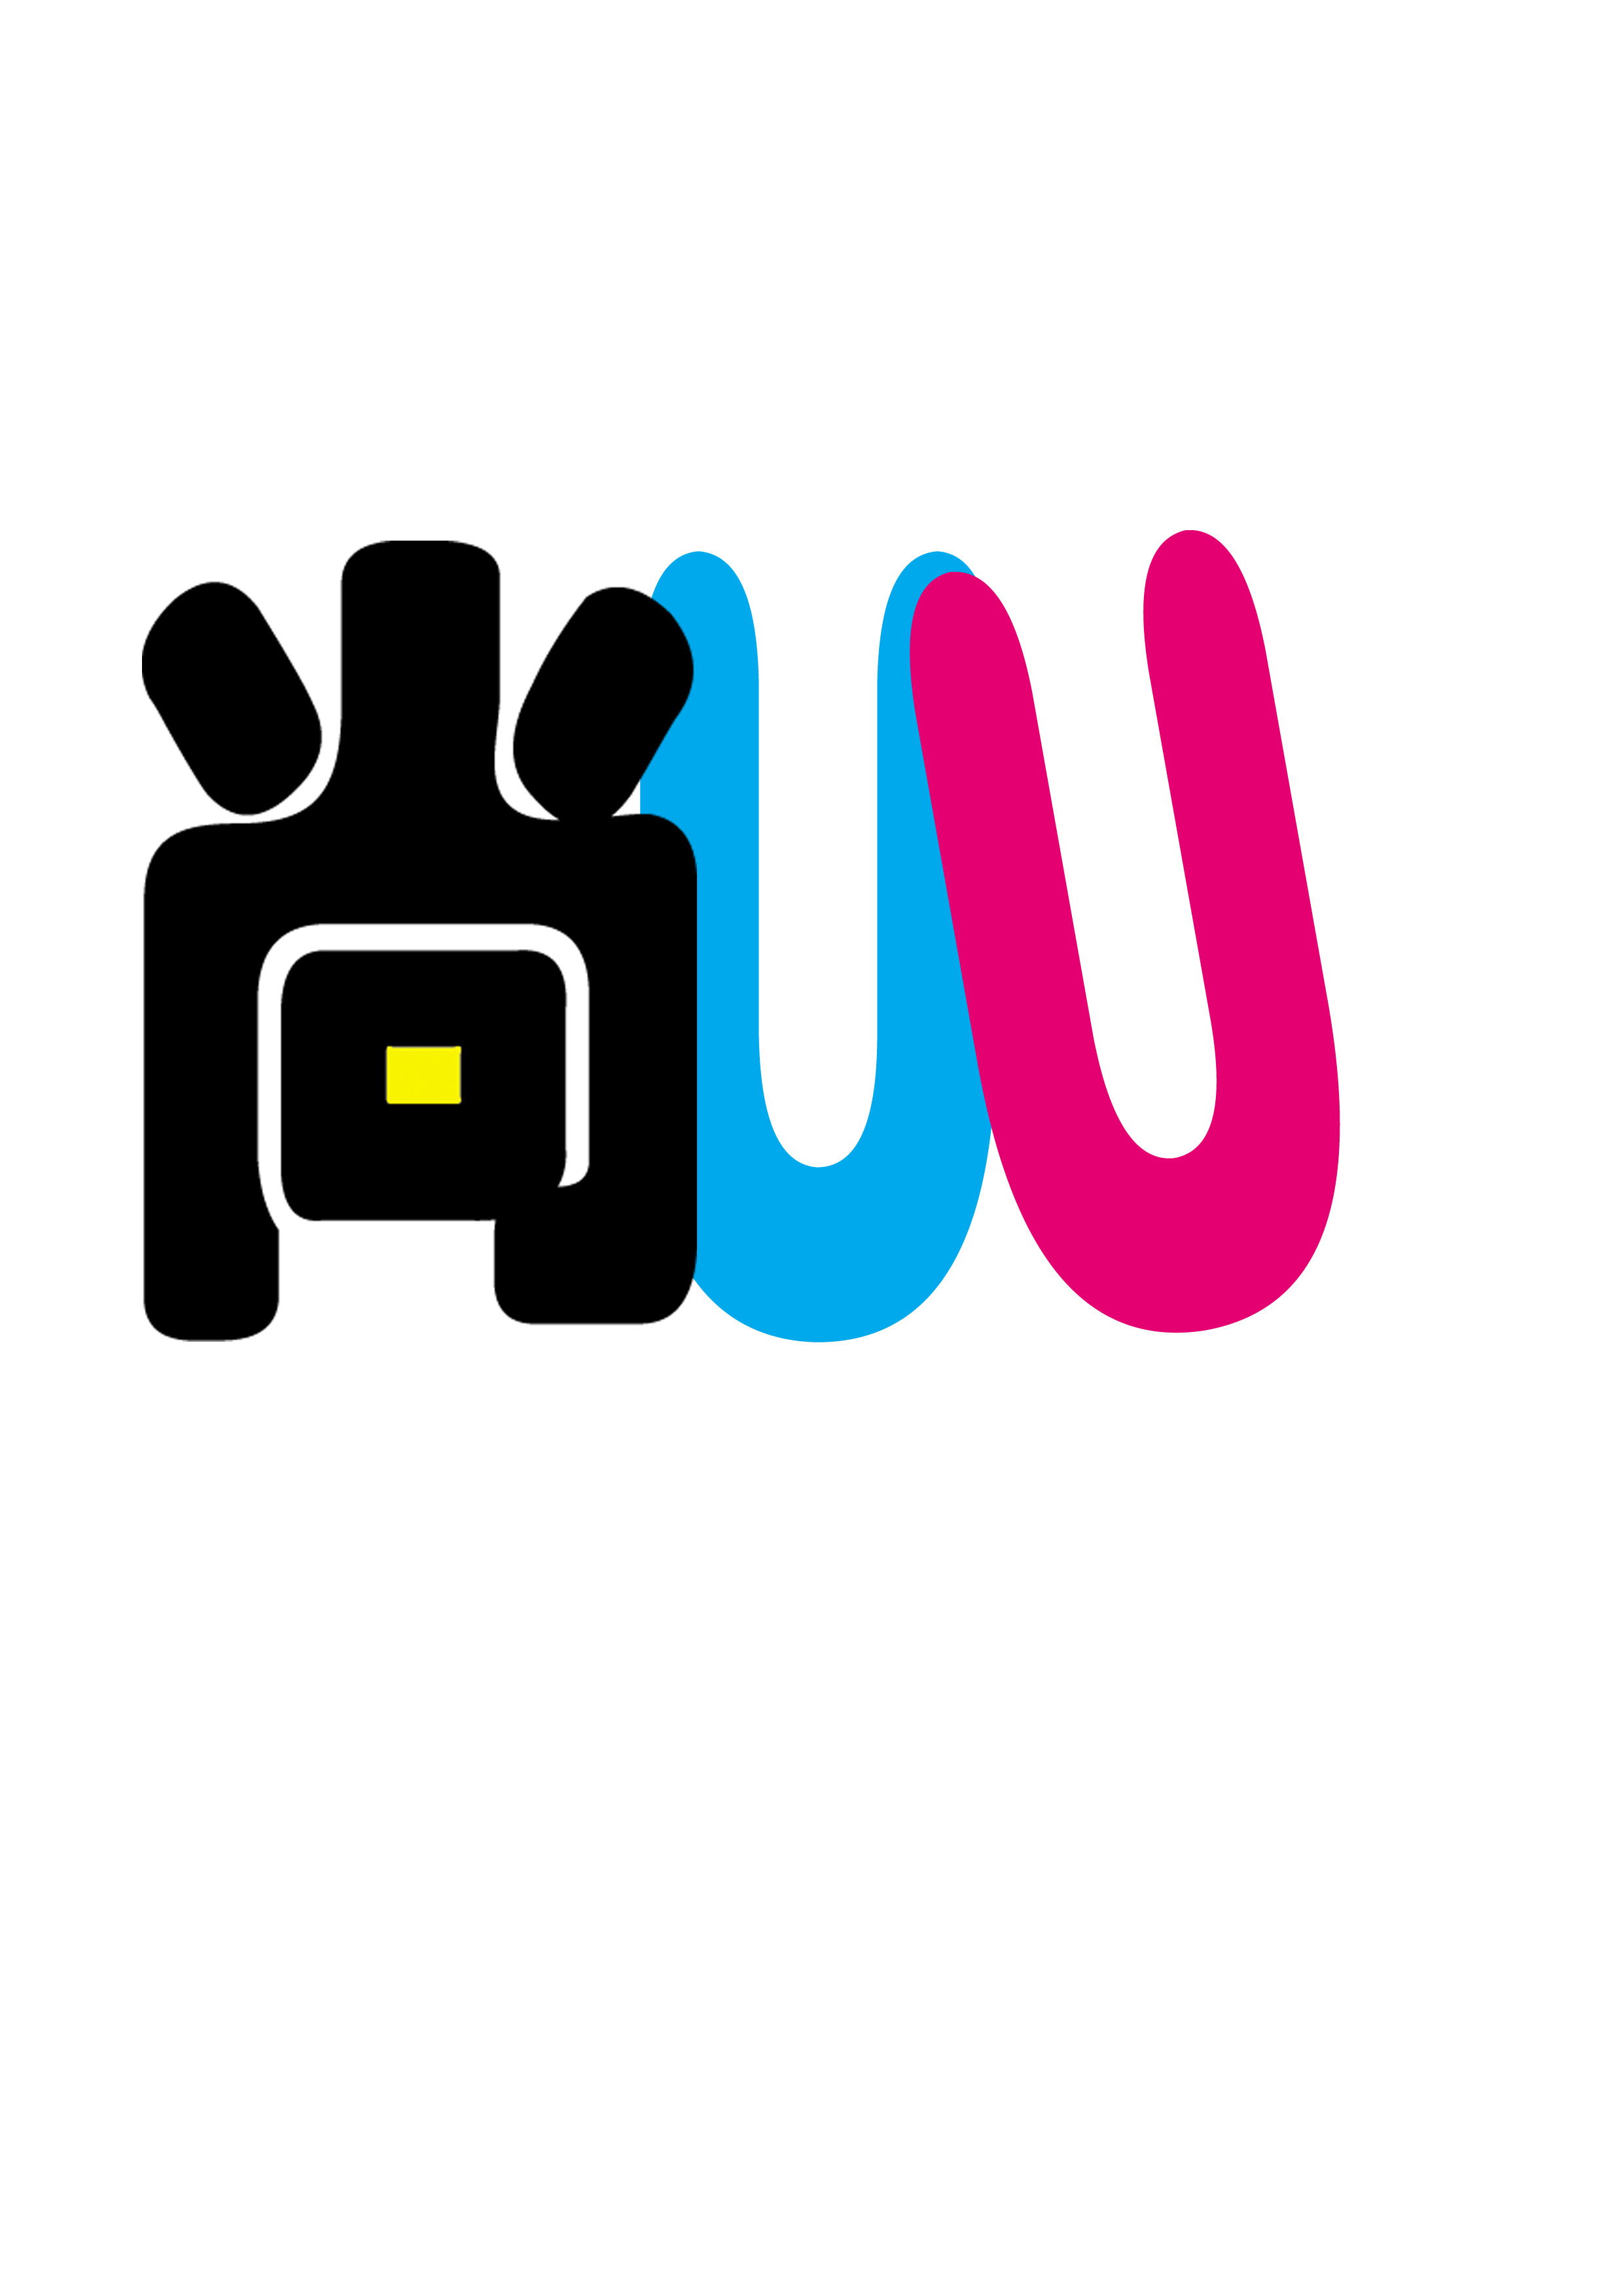 尚uu 网站logo设计第2752564号稿件